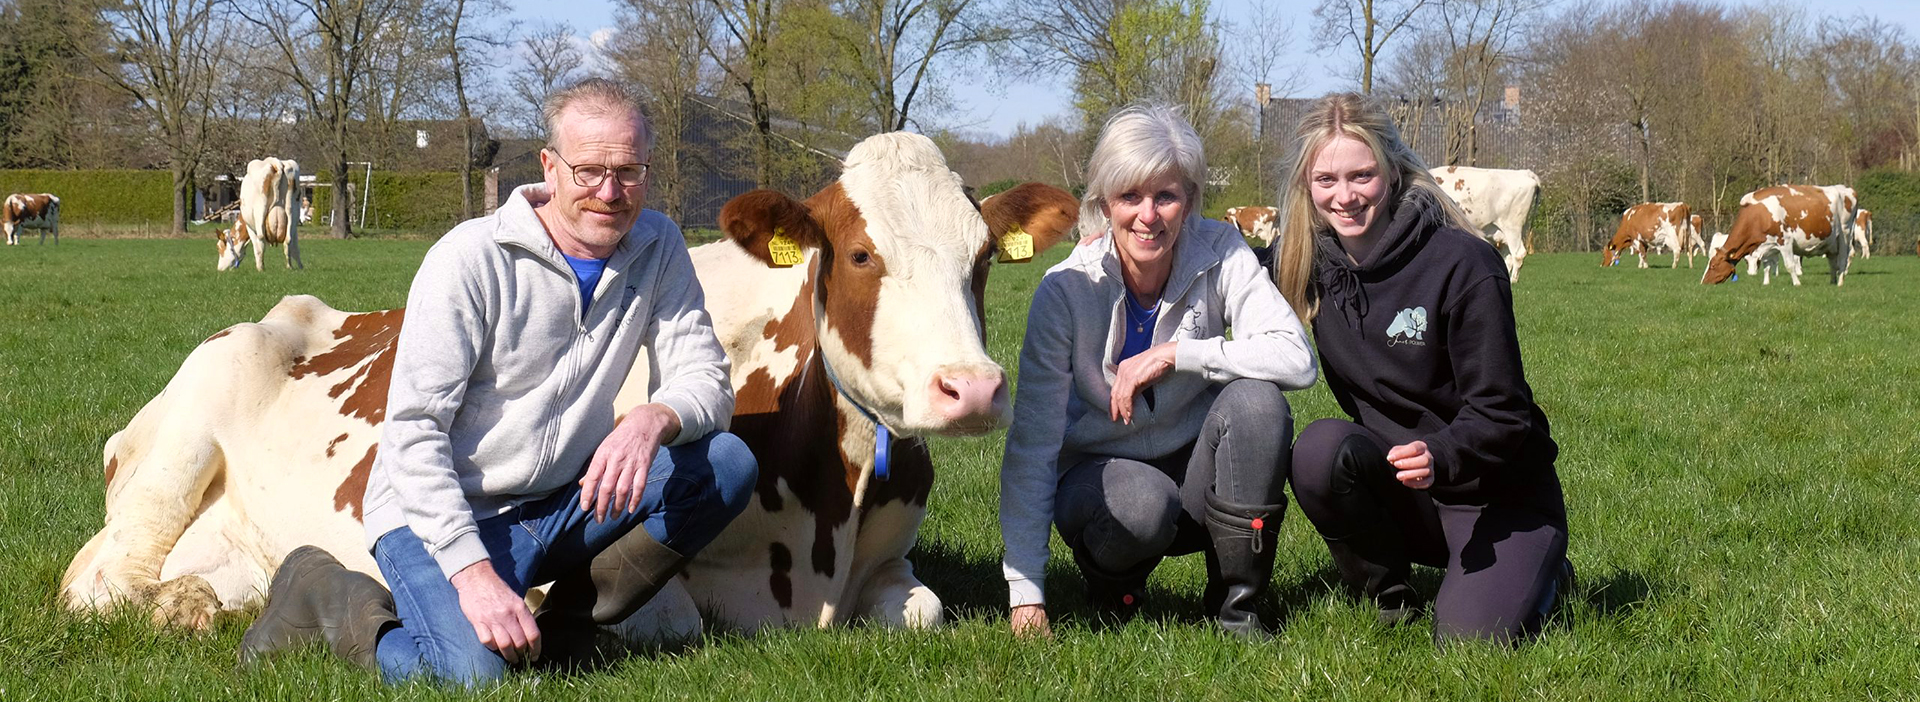 Boerderij Pouwer: ‘Aandacht voor de koeien en diergezondheid staat op één’